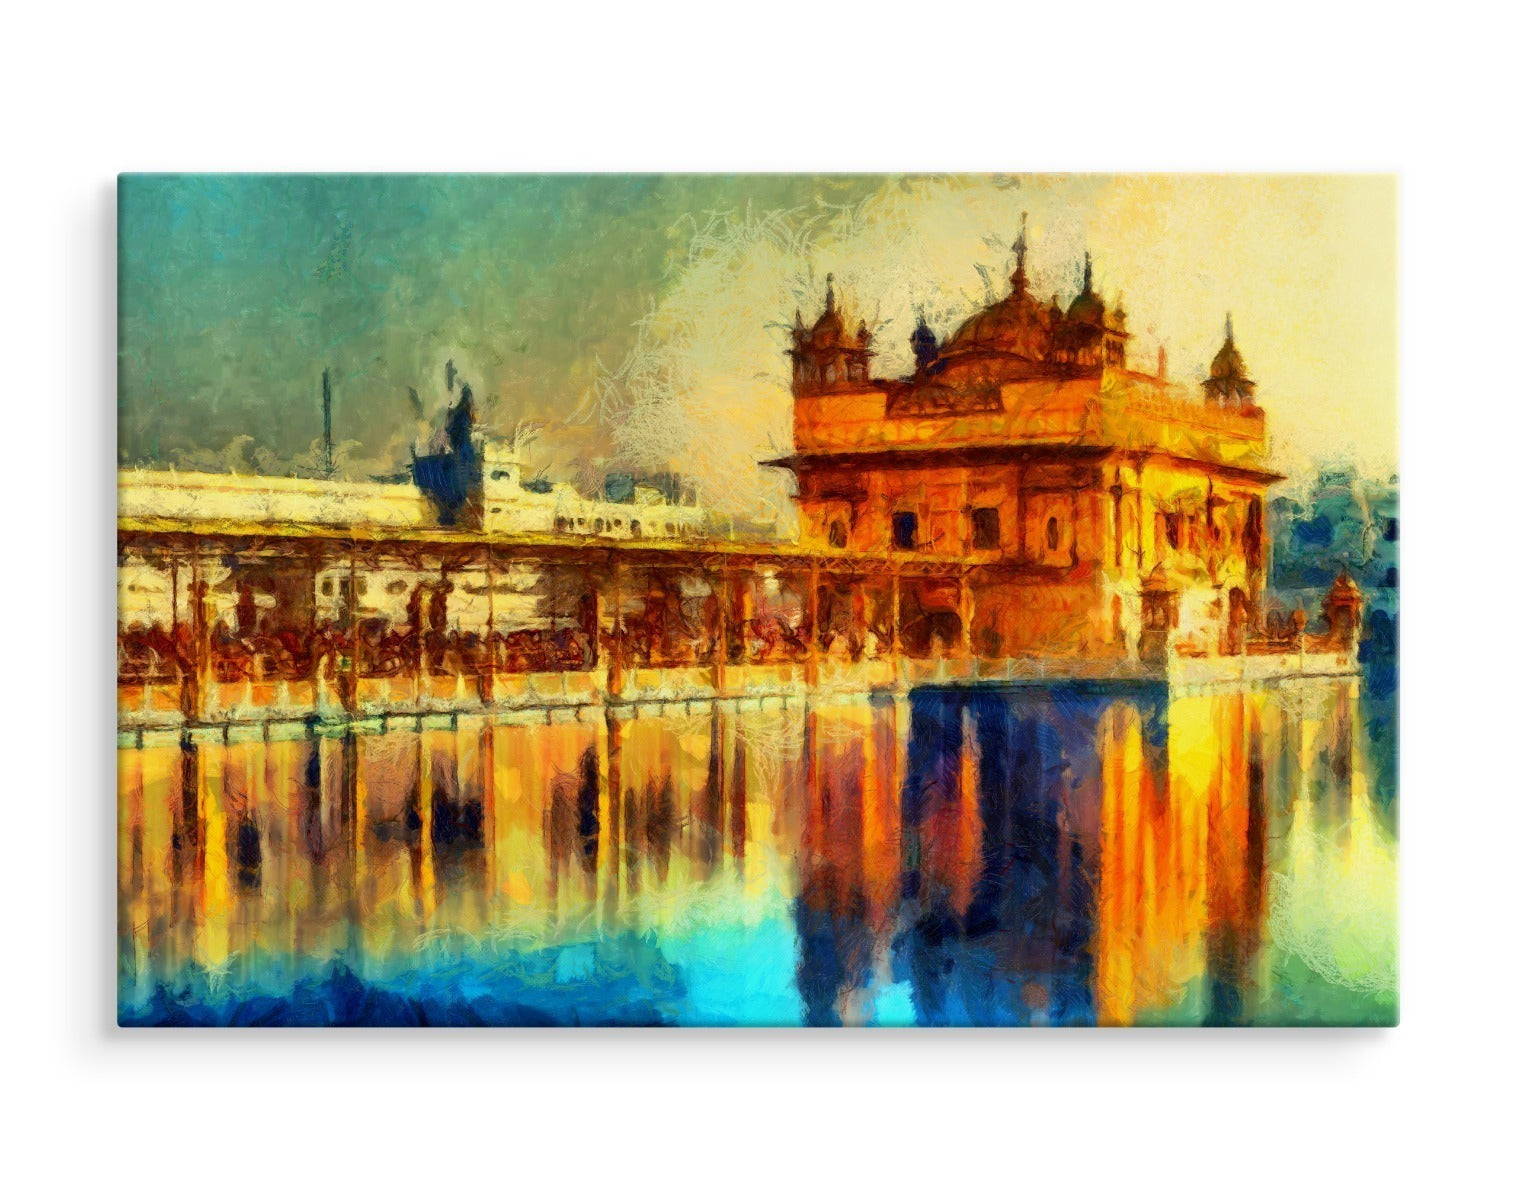 Det gylne tempel i amritsar